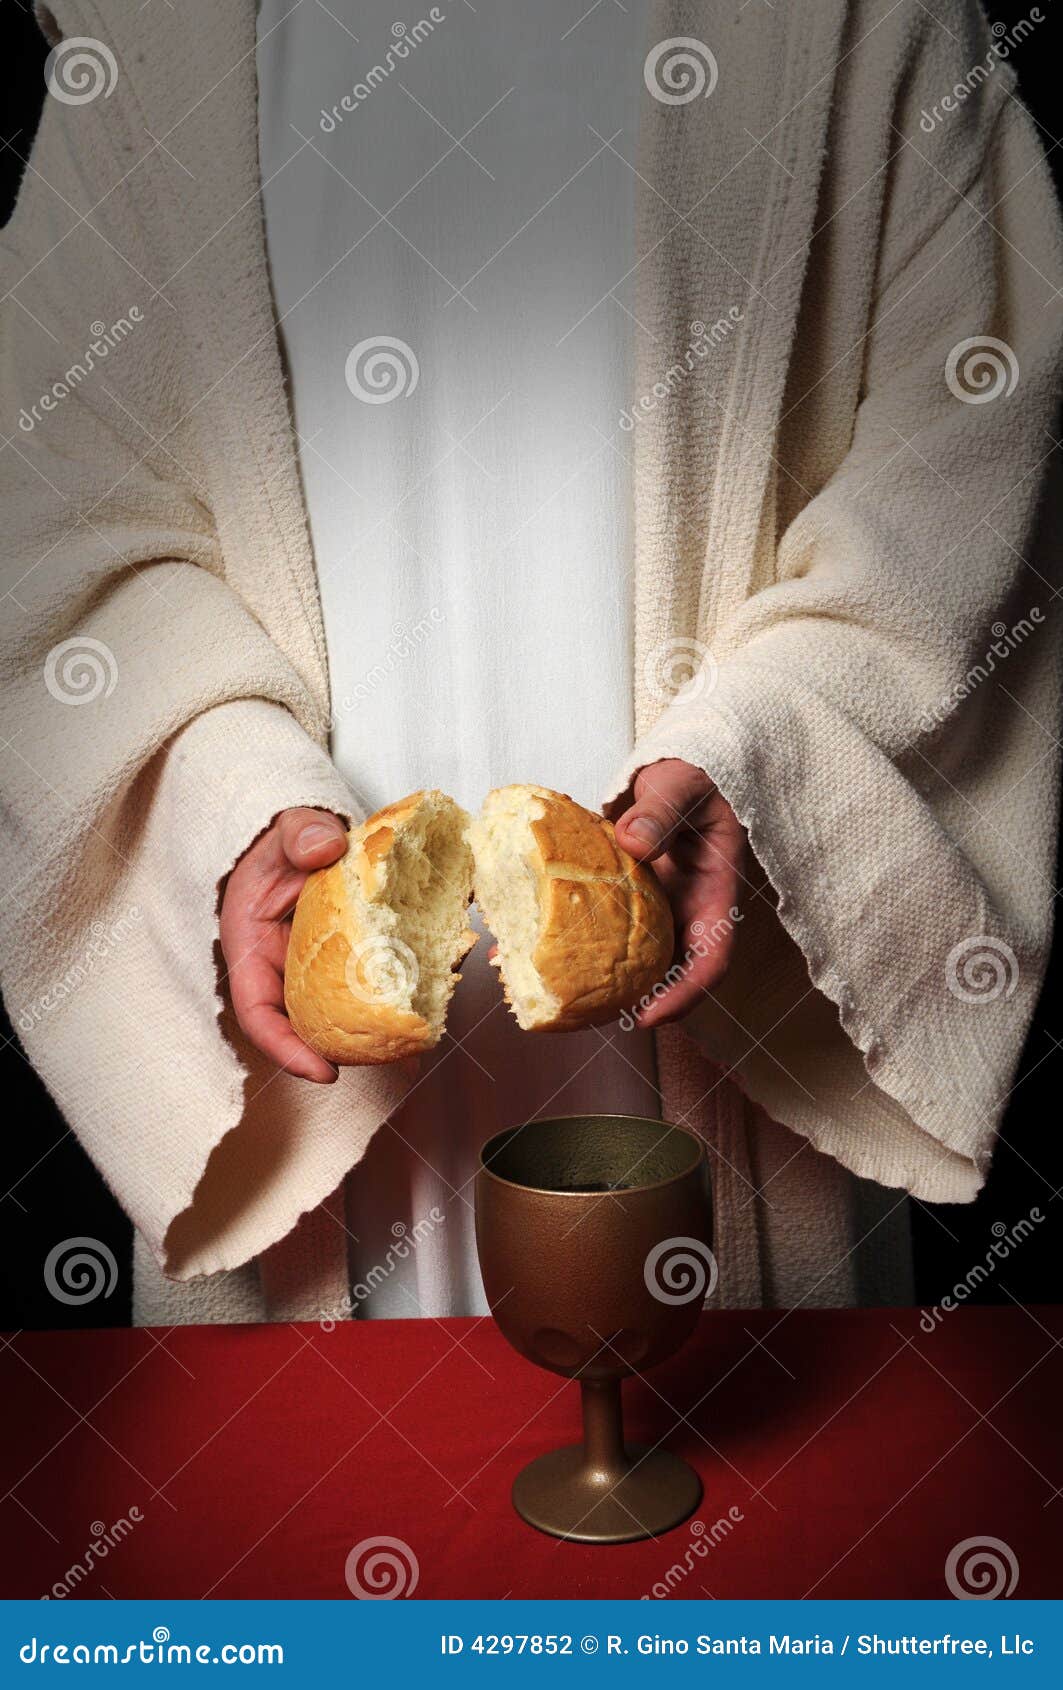 jesus breaking bread